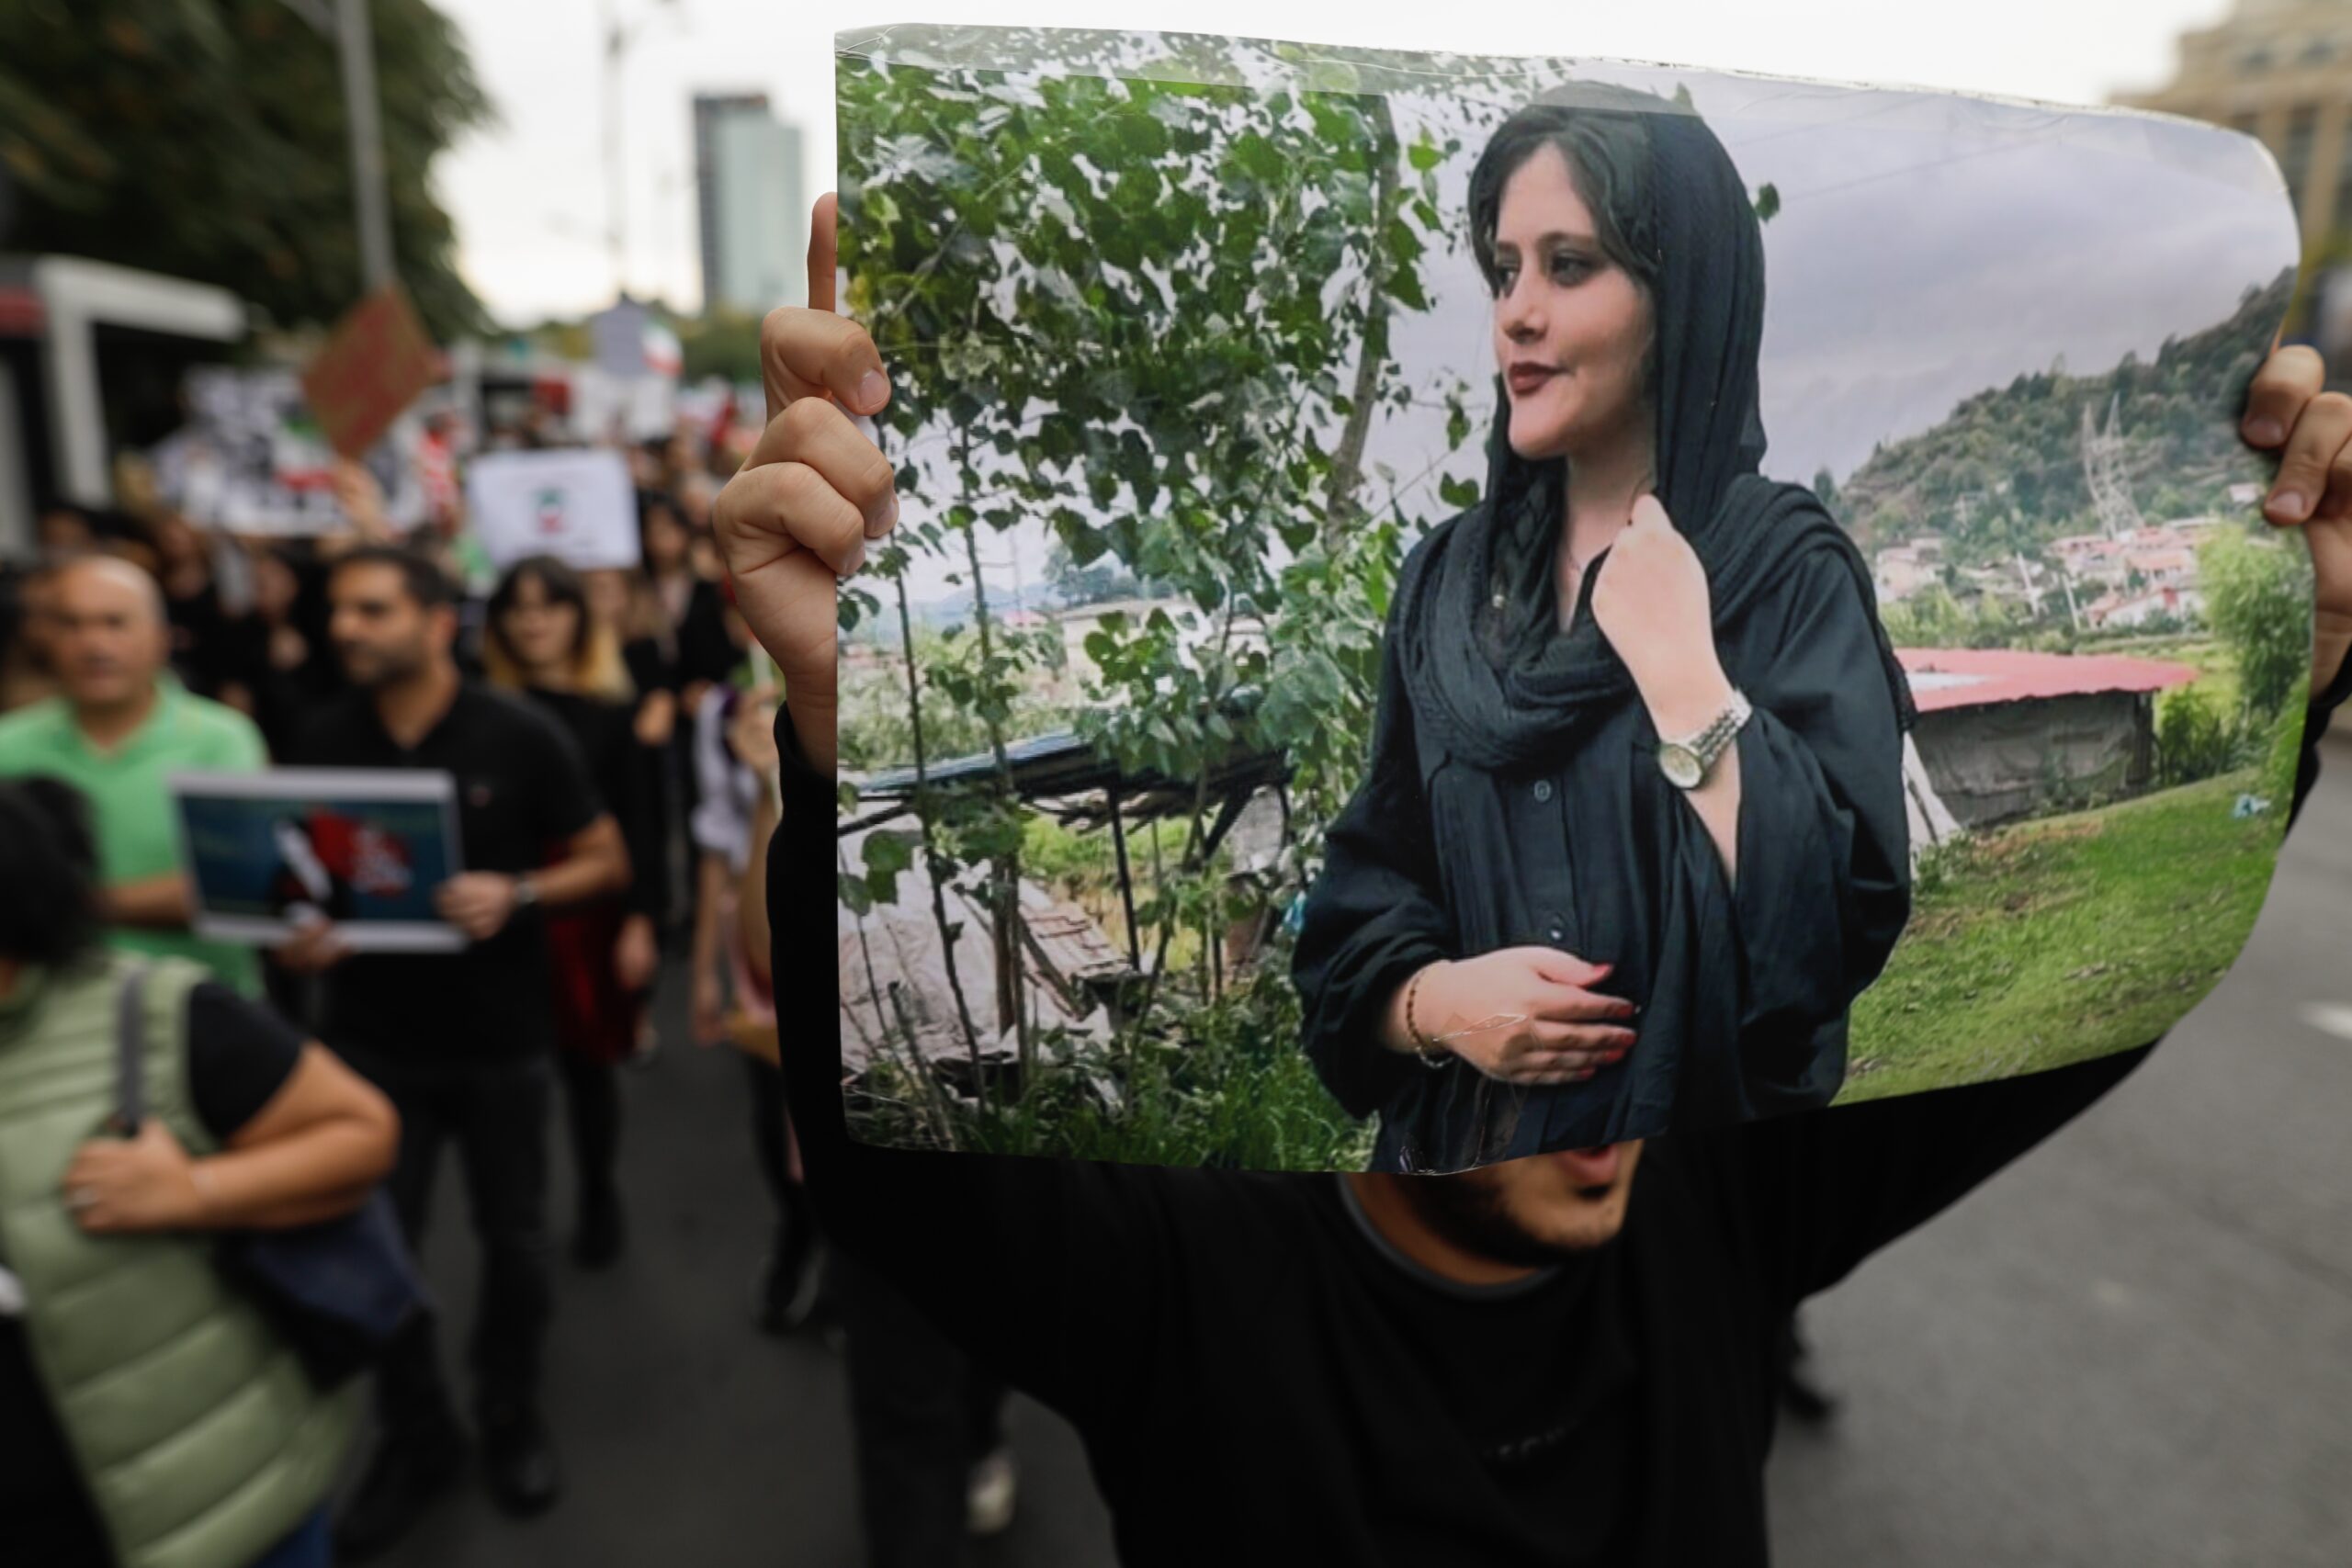 Streiks, Räte, feministische Kämpfe: Interview mit Sarah M. zur Situation im Iran